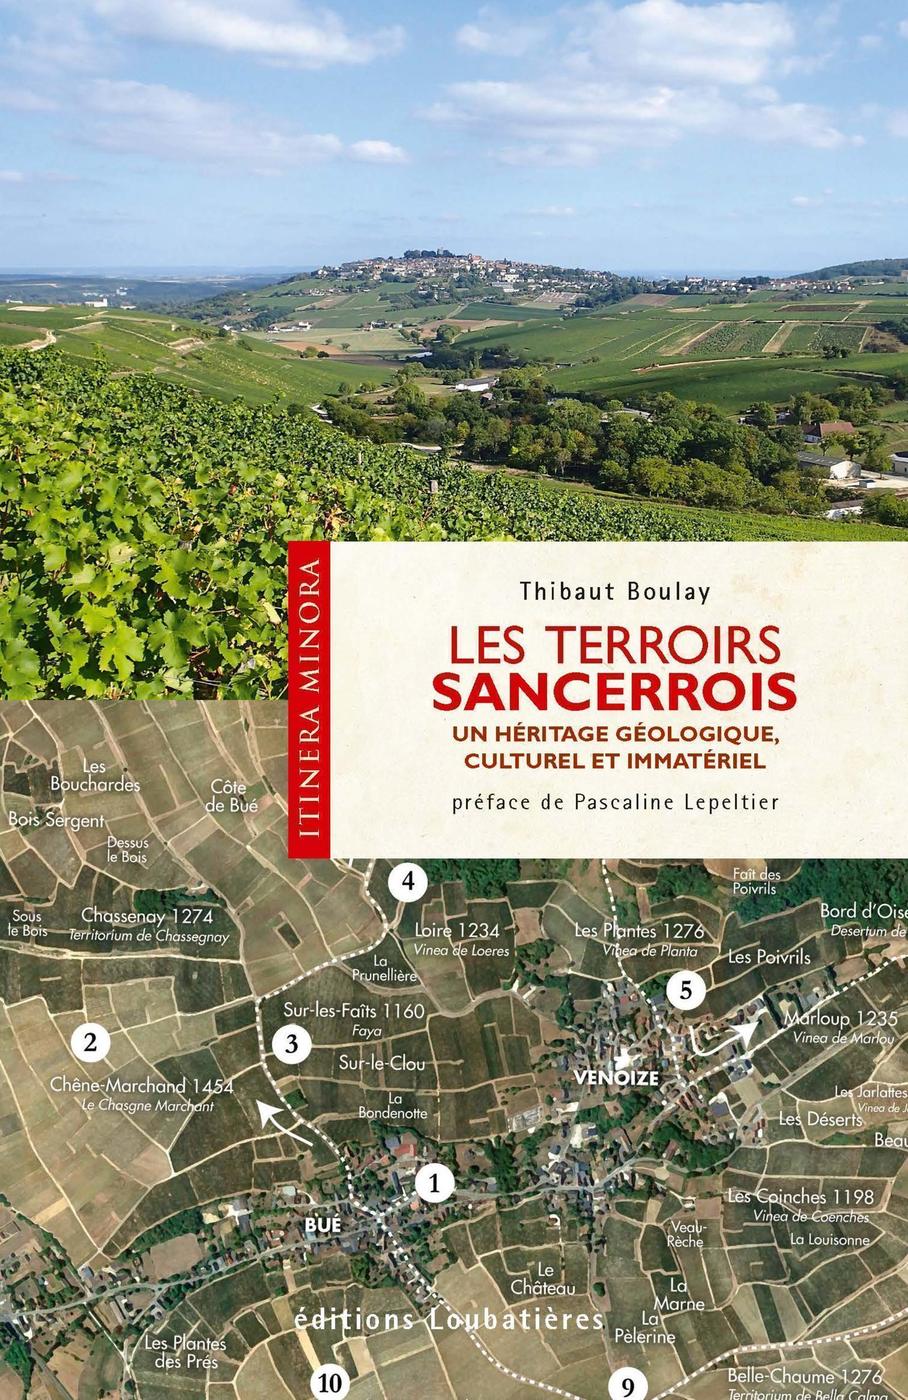 Les terroirs Sancerrois: Un héritage géologique, culturel et immatériel.